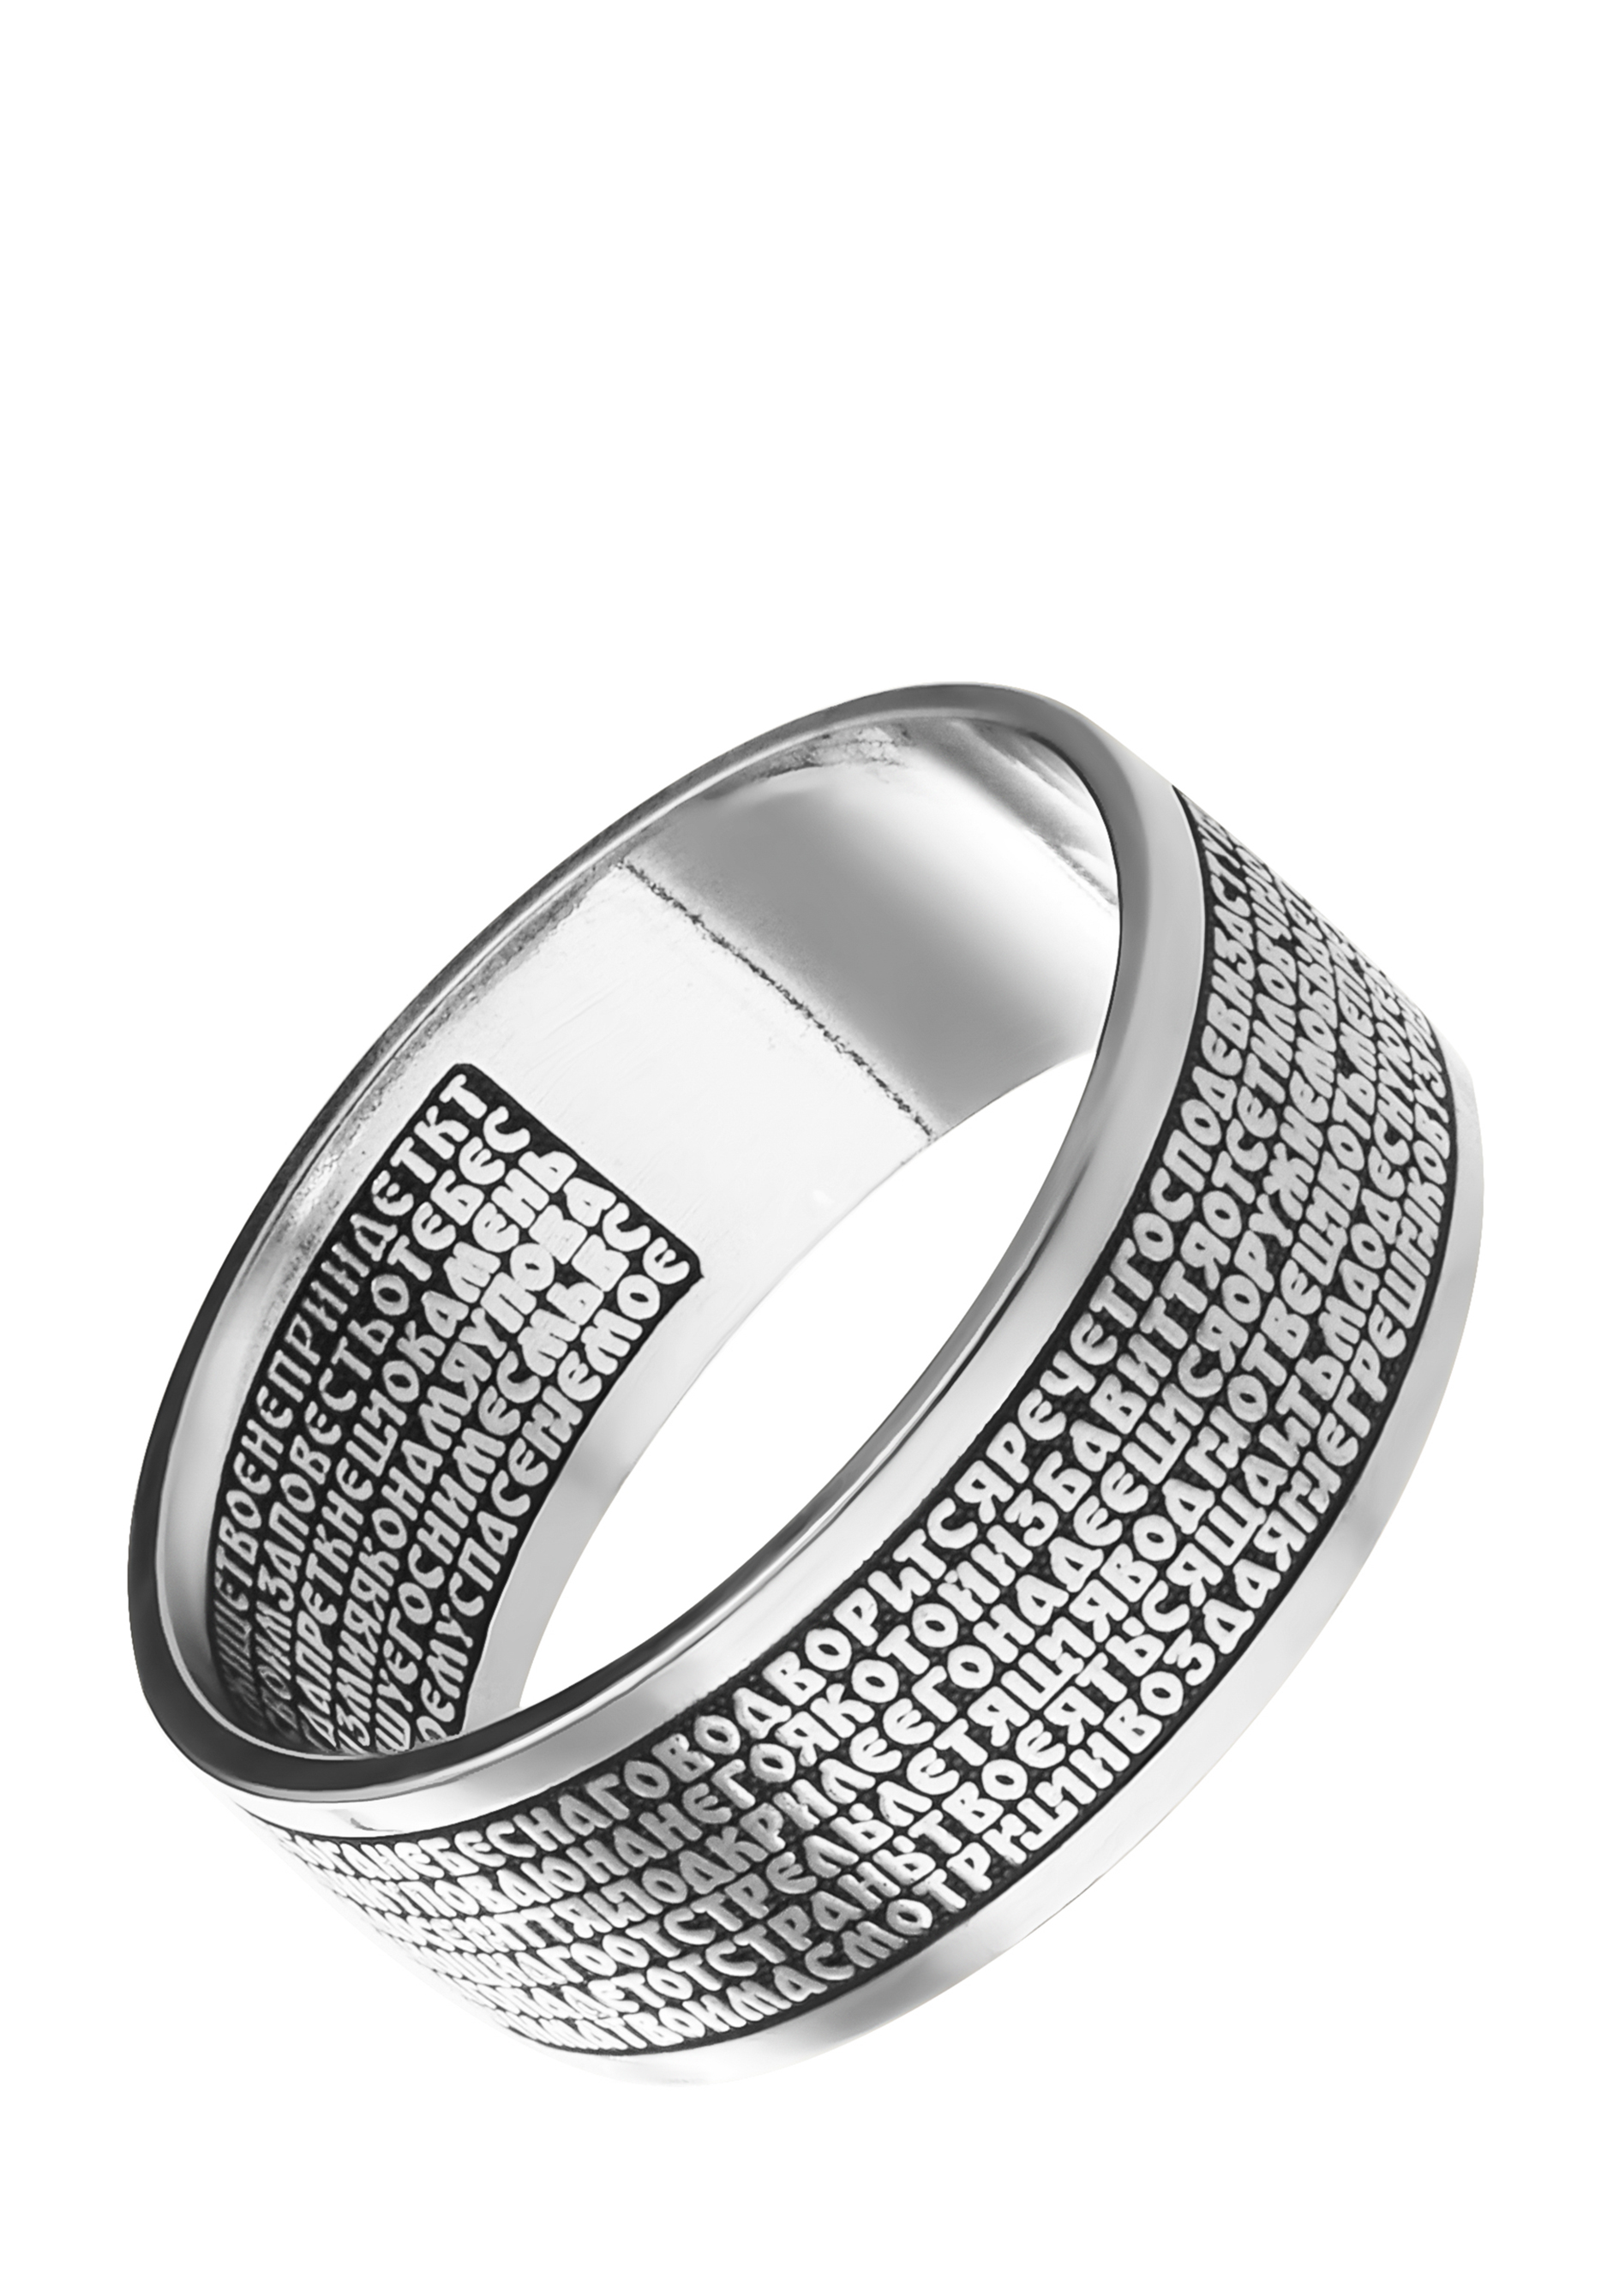 Кольцо серебряное 90 Псалом серебряное кольцо ювелирное изделие m0514r 90 70